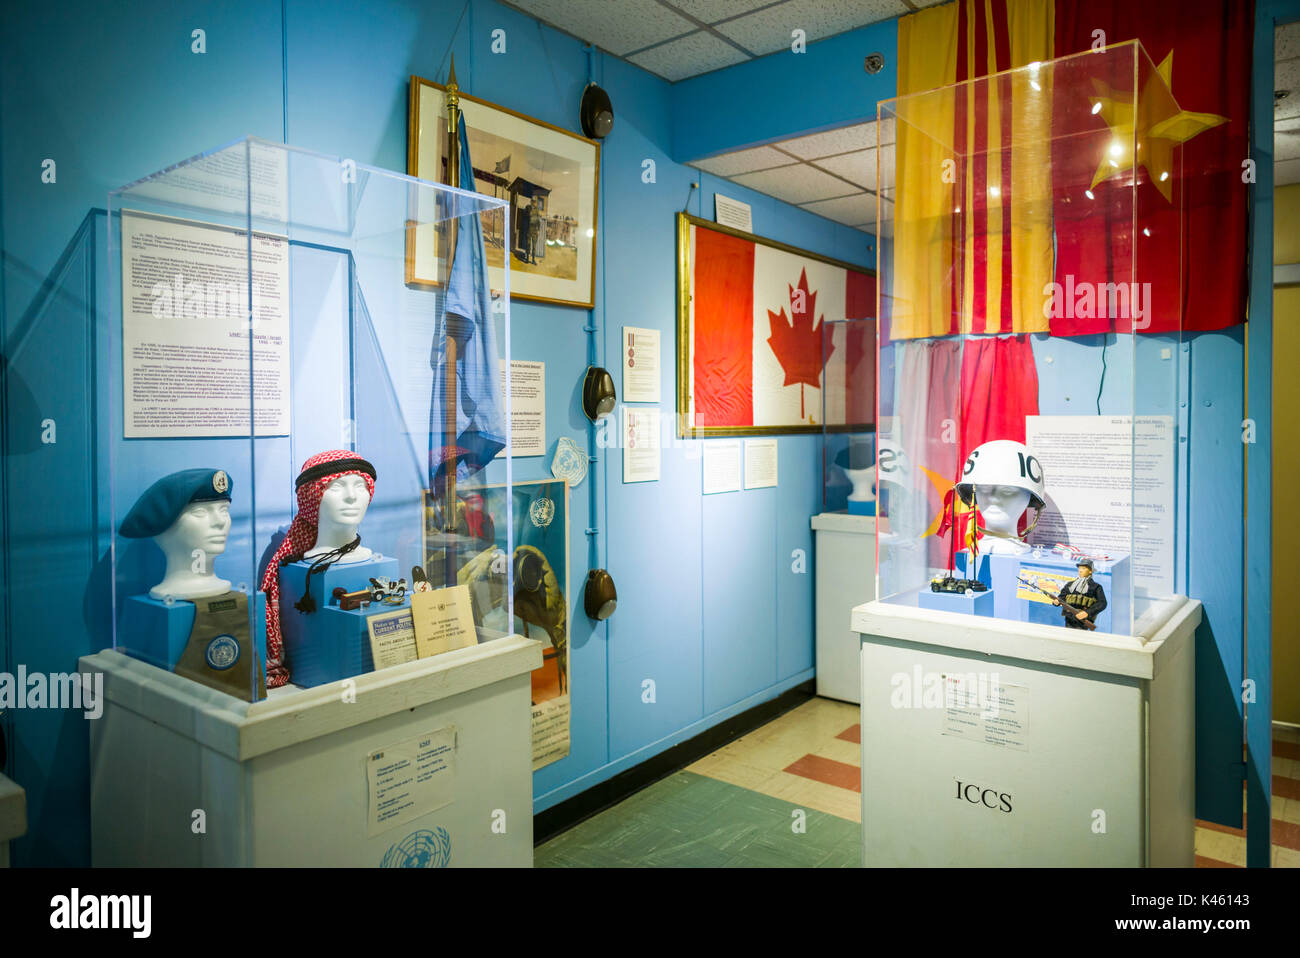 Kanada, Ontario, Karpfen, die diefenbunker, Kanadische Museum zum Kalten Krieg in unterirdische Bunker, die Vereinten Nationen aufweisen Stockfoto